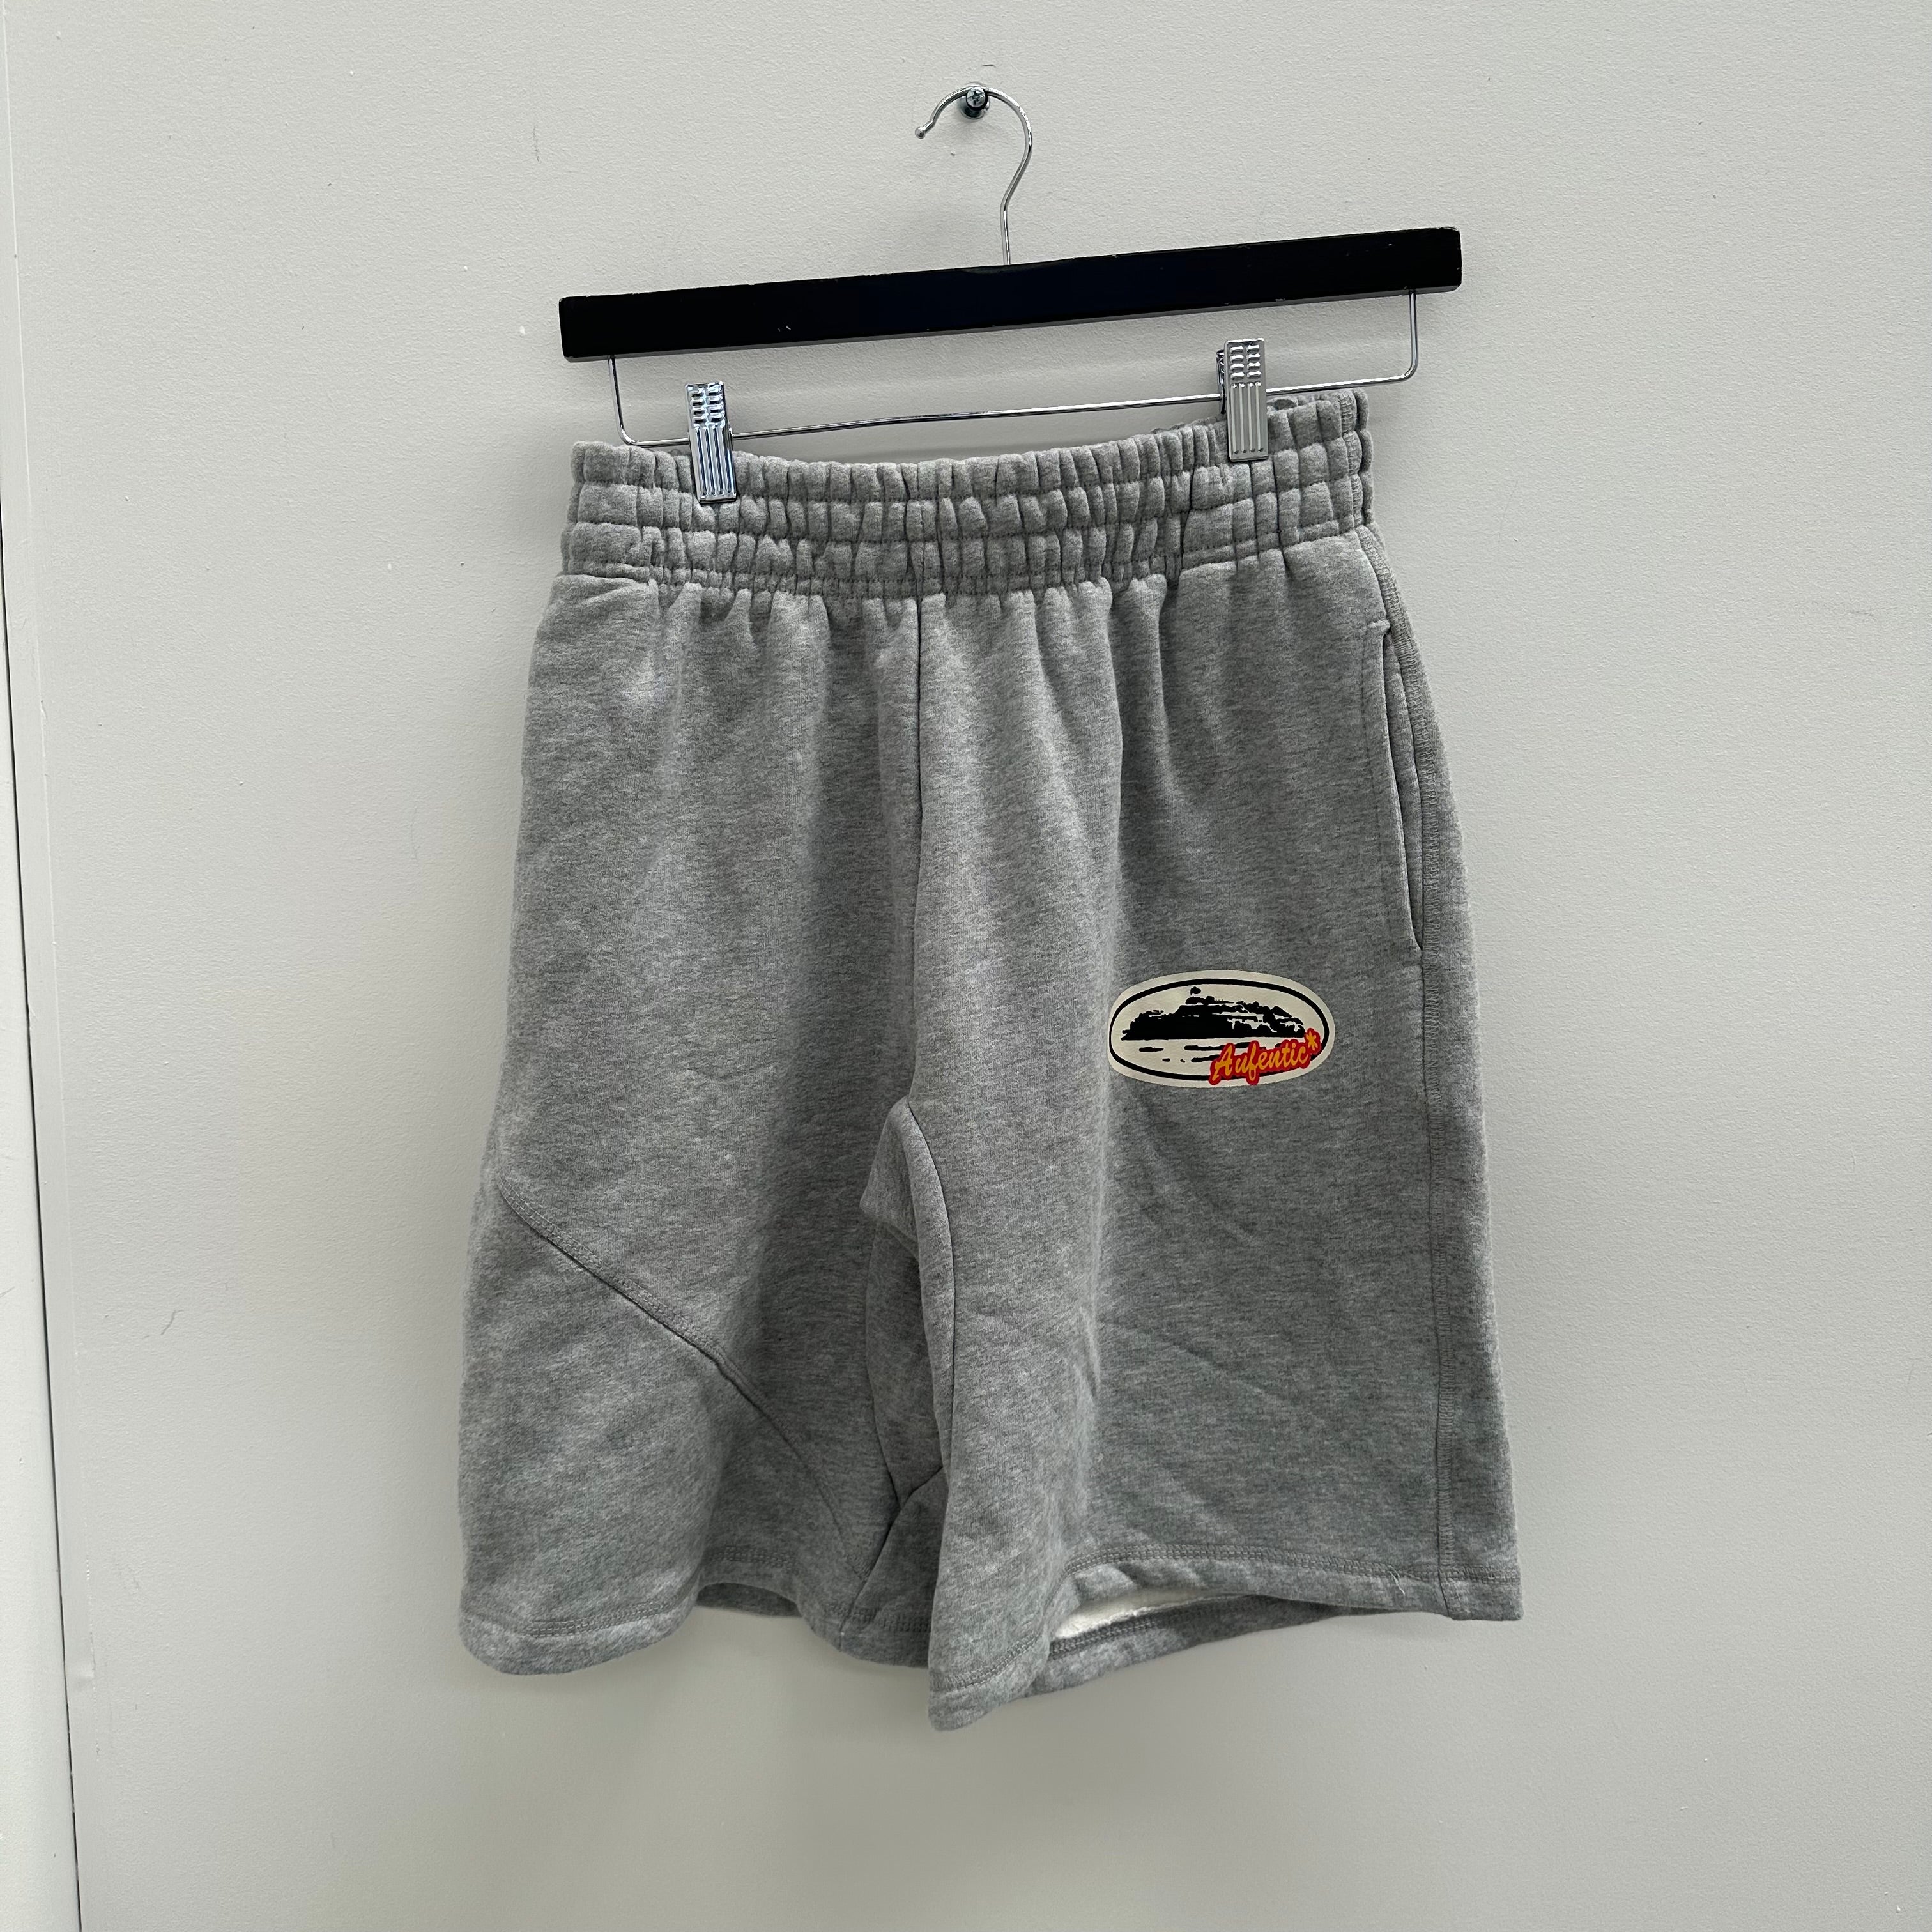 Corteiz Aufentic Shorts Grey (Size XL)